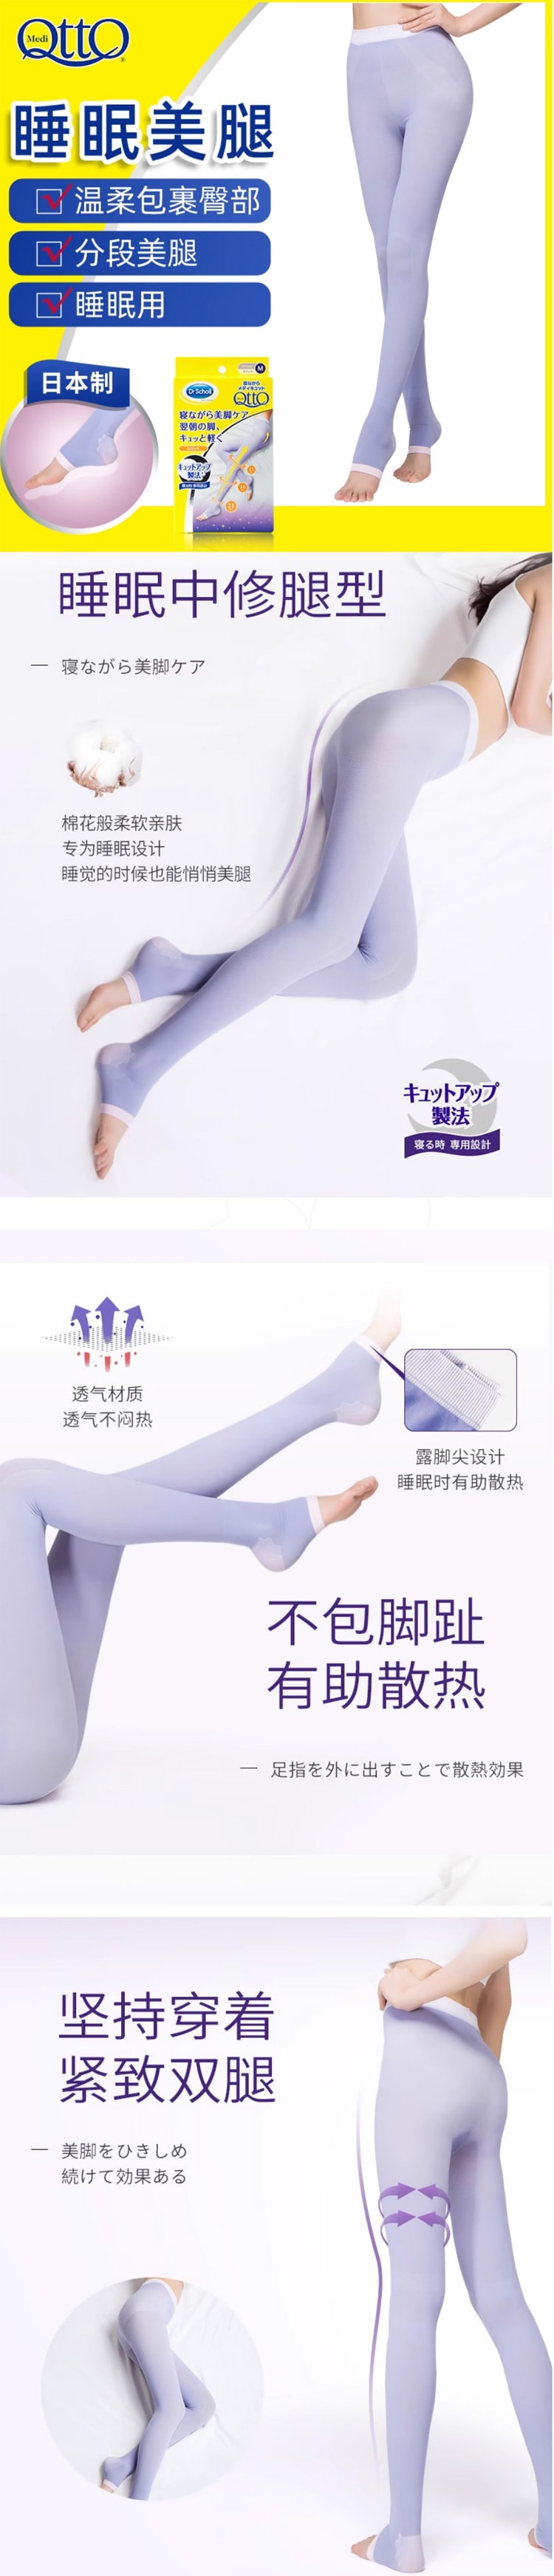 【日本直效郵件】DR.SCHOLL 爽健 QTTO 睡眠專用機能美腿襪提臀褲襪型 L碼